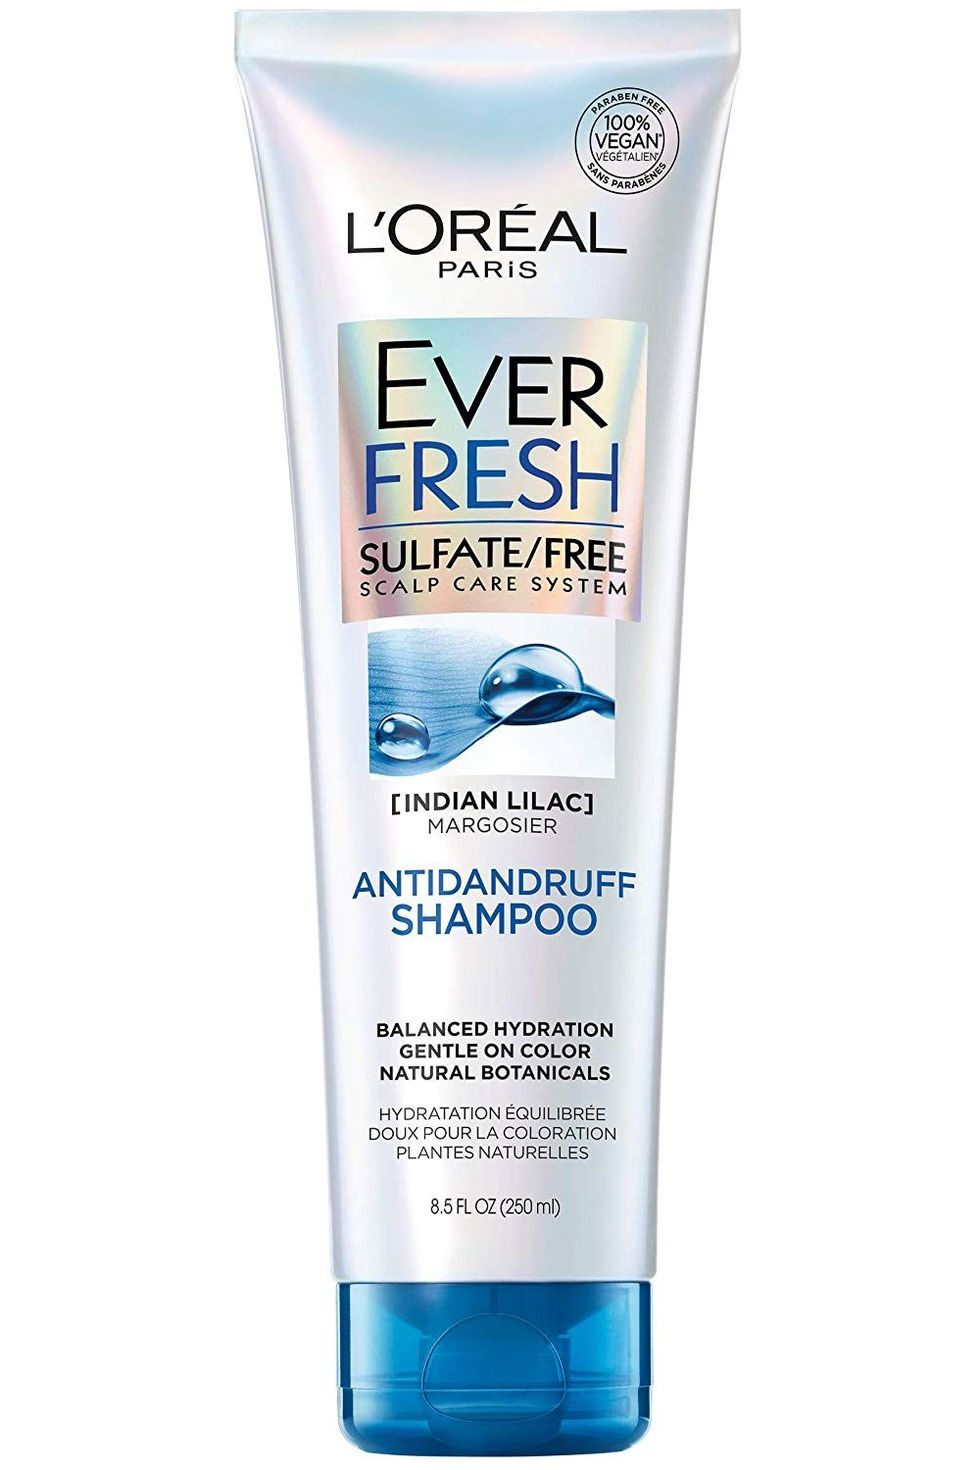 EverFresh Antidandruff Shampoo